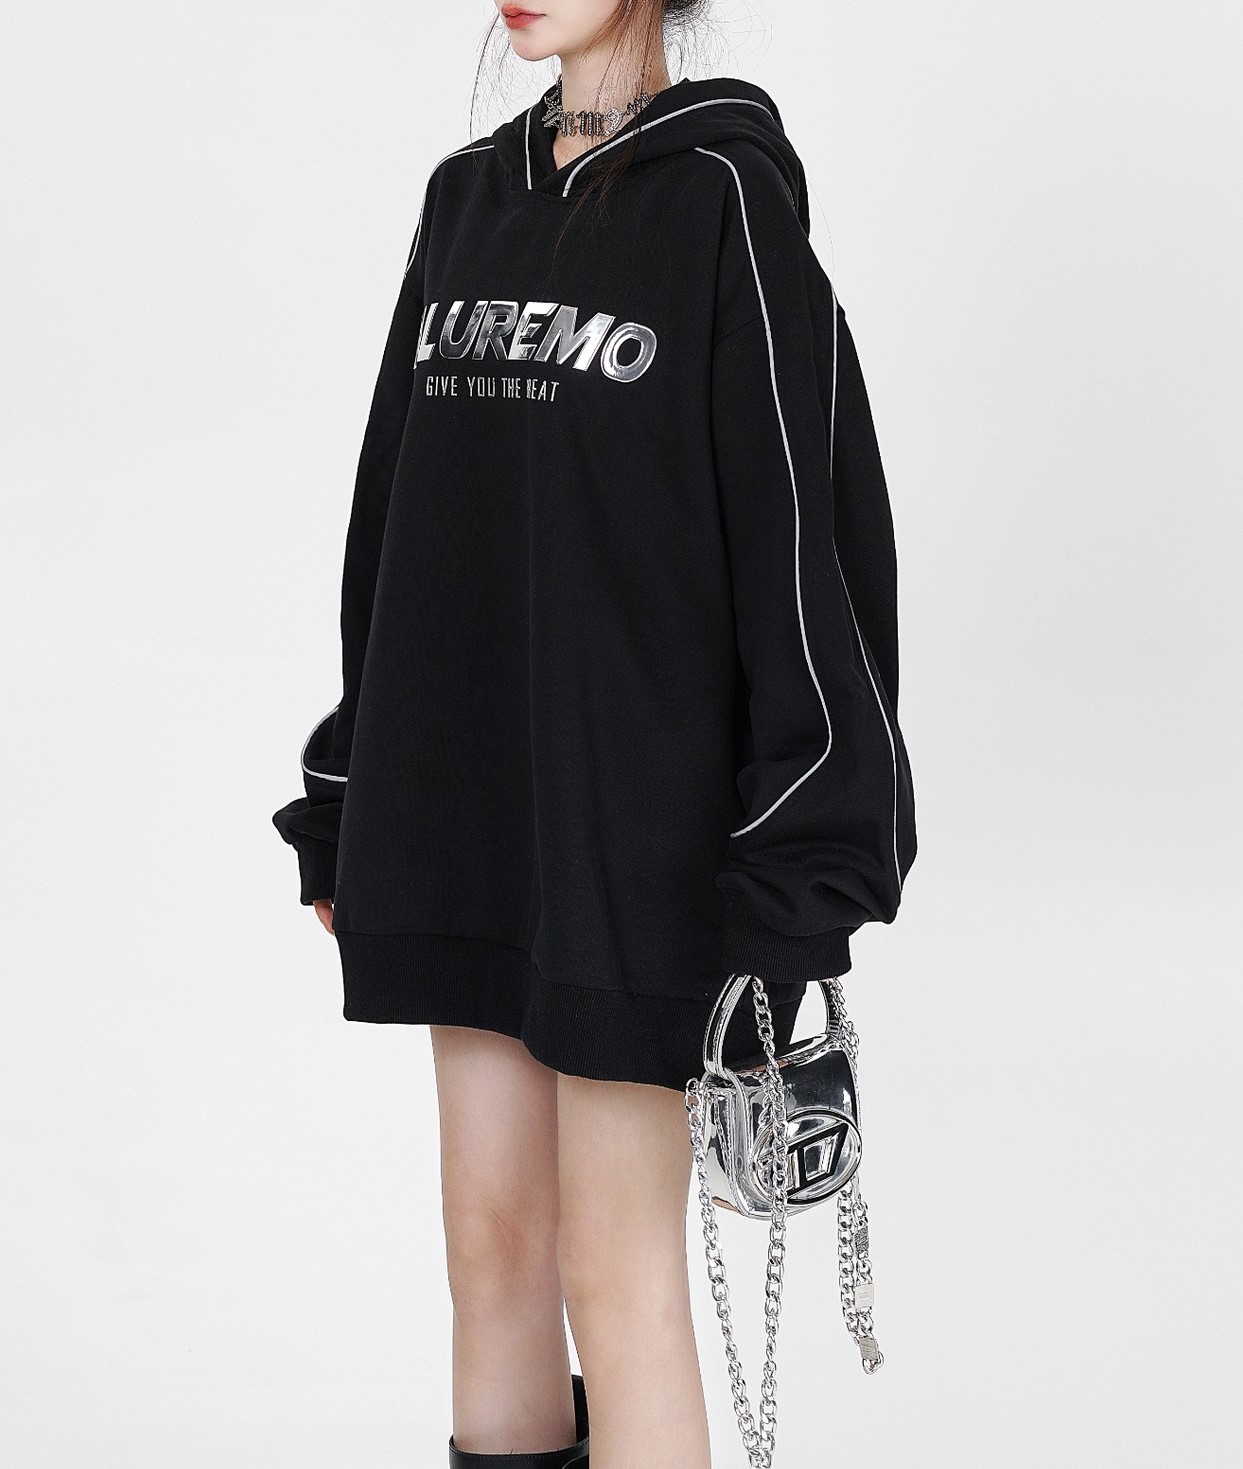 Dark style high street hooded trendy sweatshirt